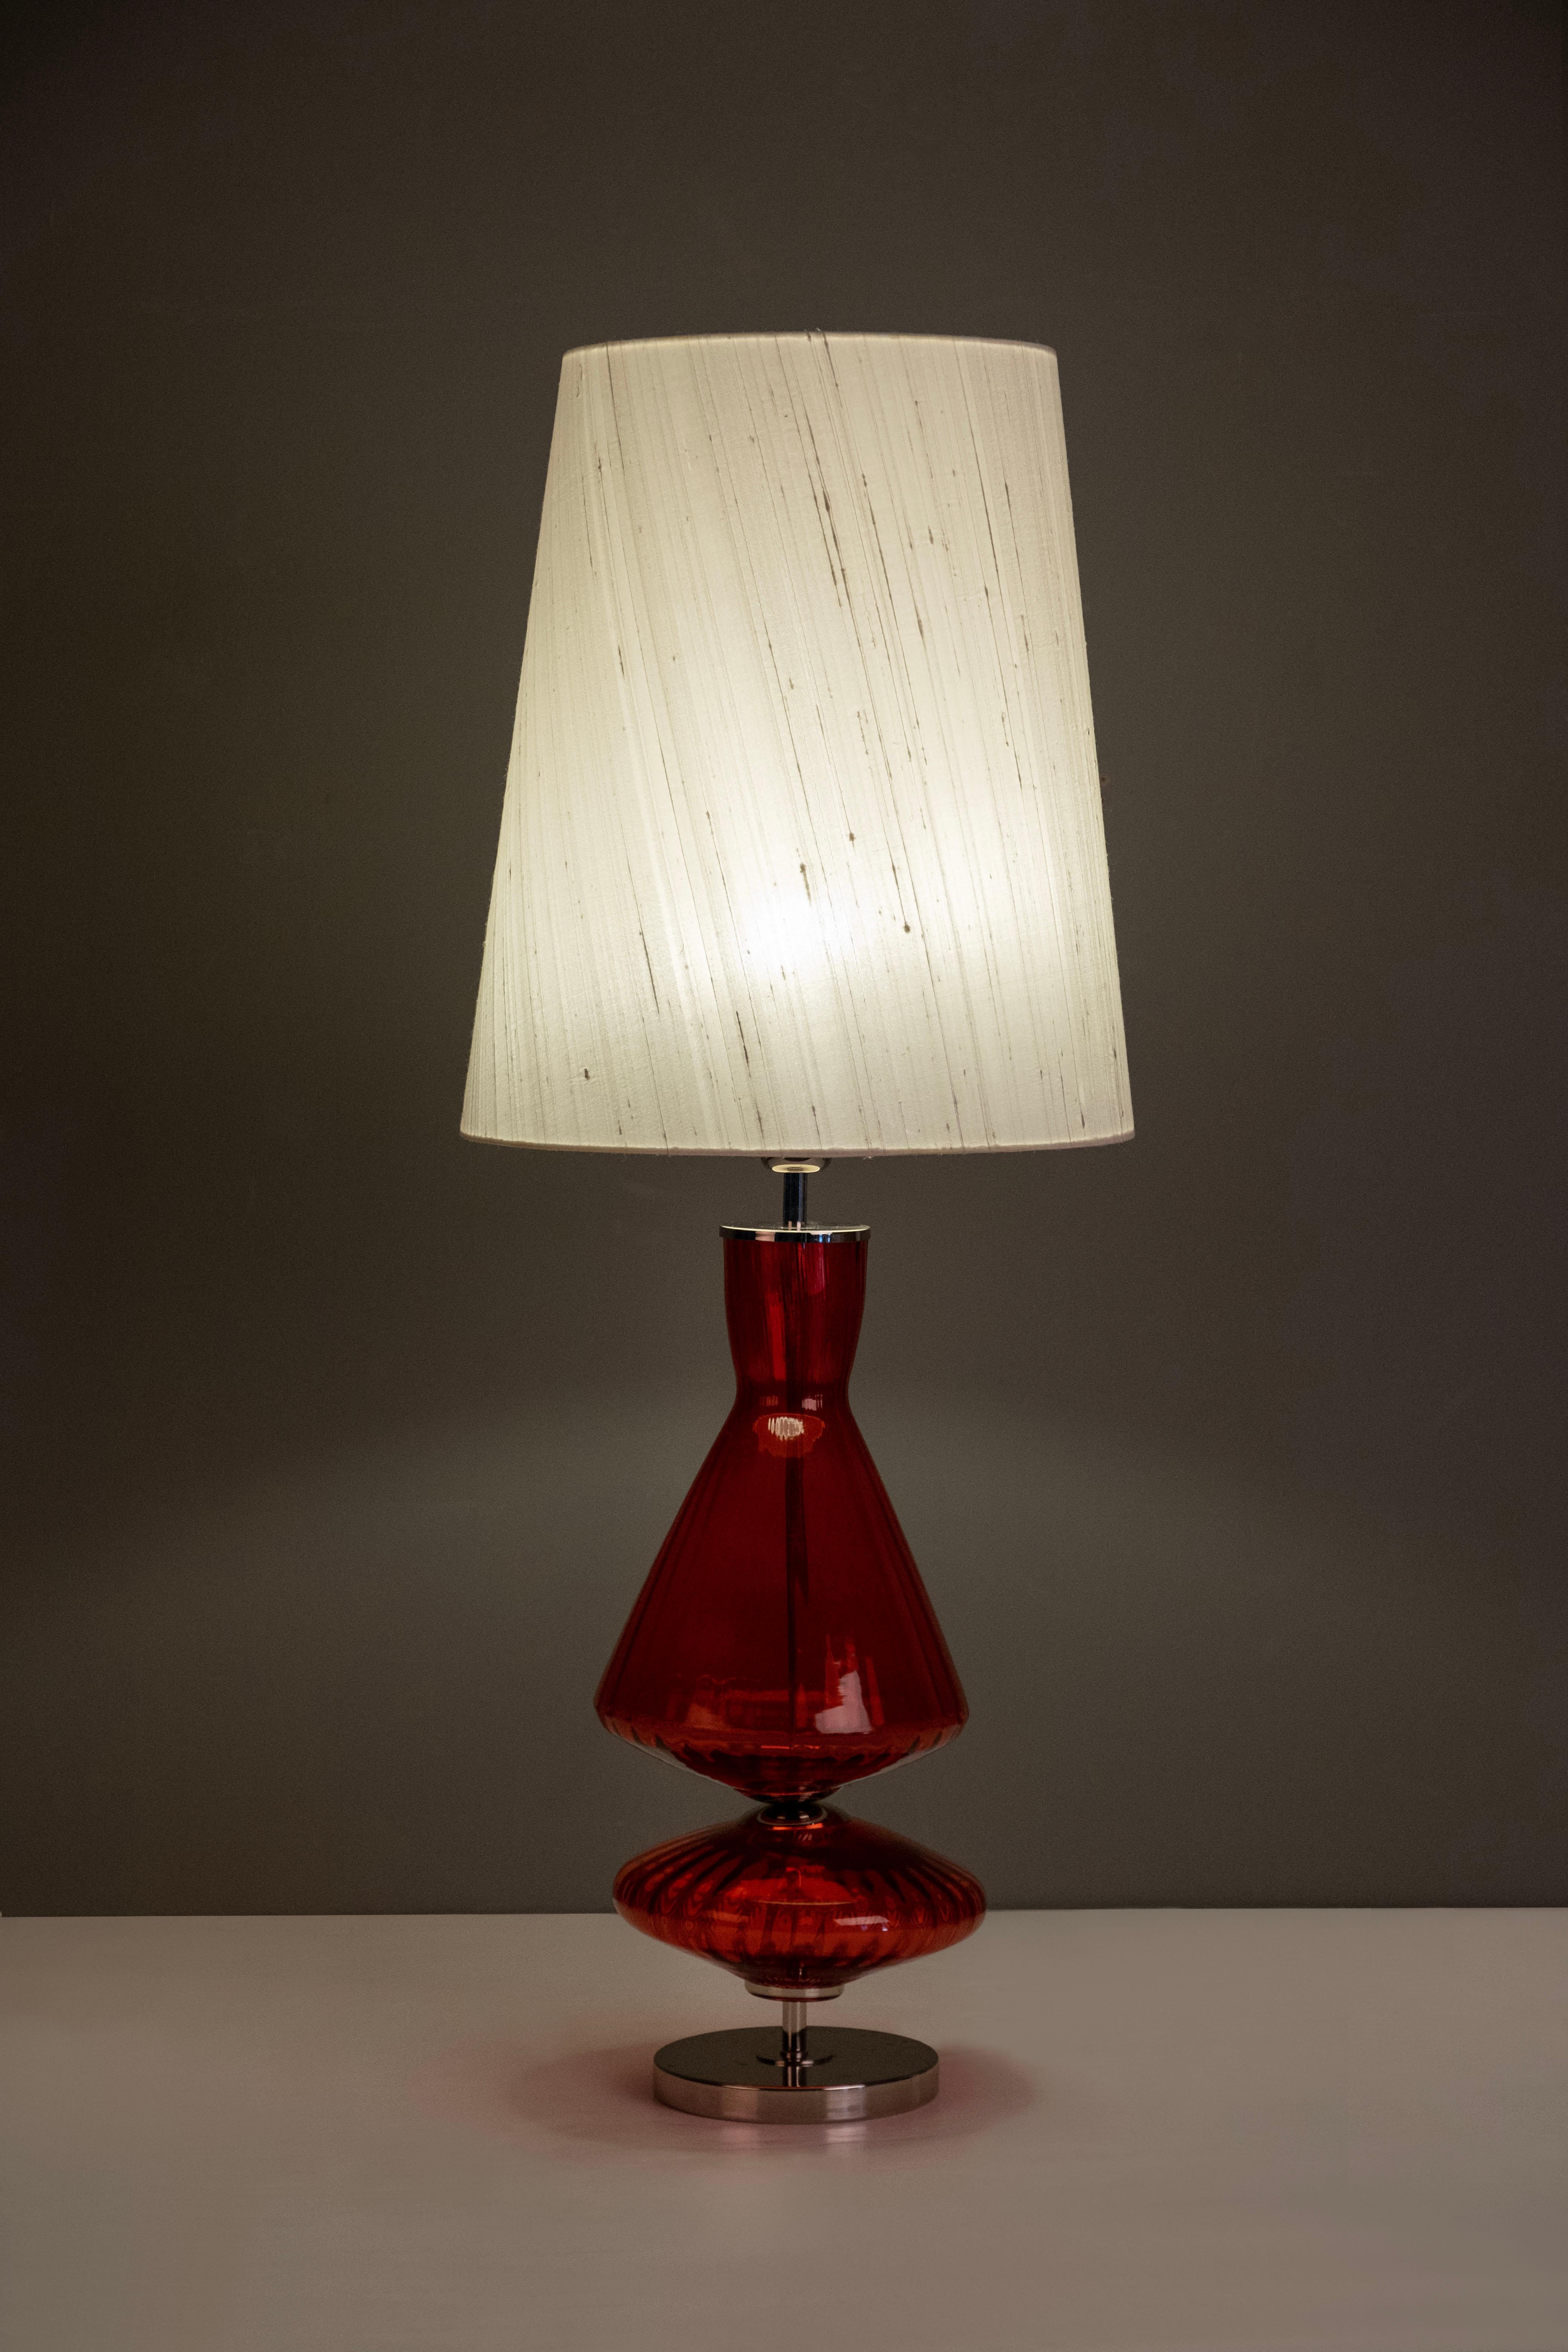 Lot de 2 lampes de table Assis, Collection S, fabriquées à la main au Portugal - Europe par GF Modern.

Assis est une lampe de table élégante et un complément attrayant pour une maison moderne. Le verre Red et l'acier inoxydable poli se combinent